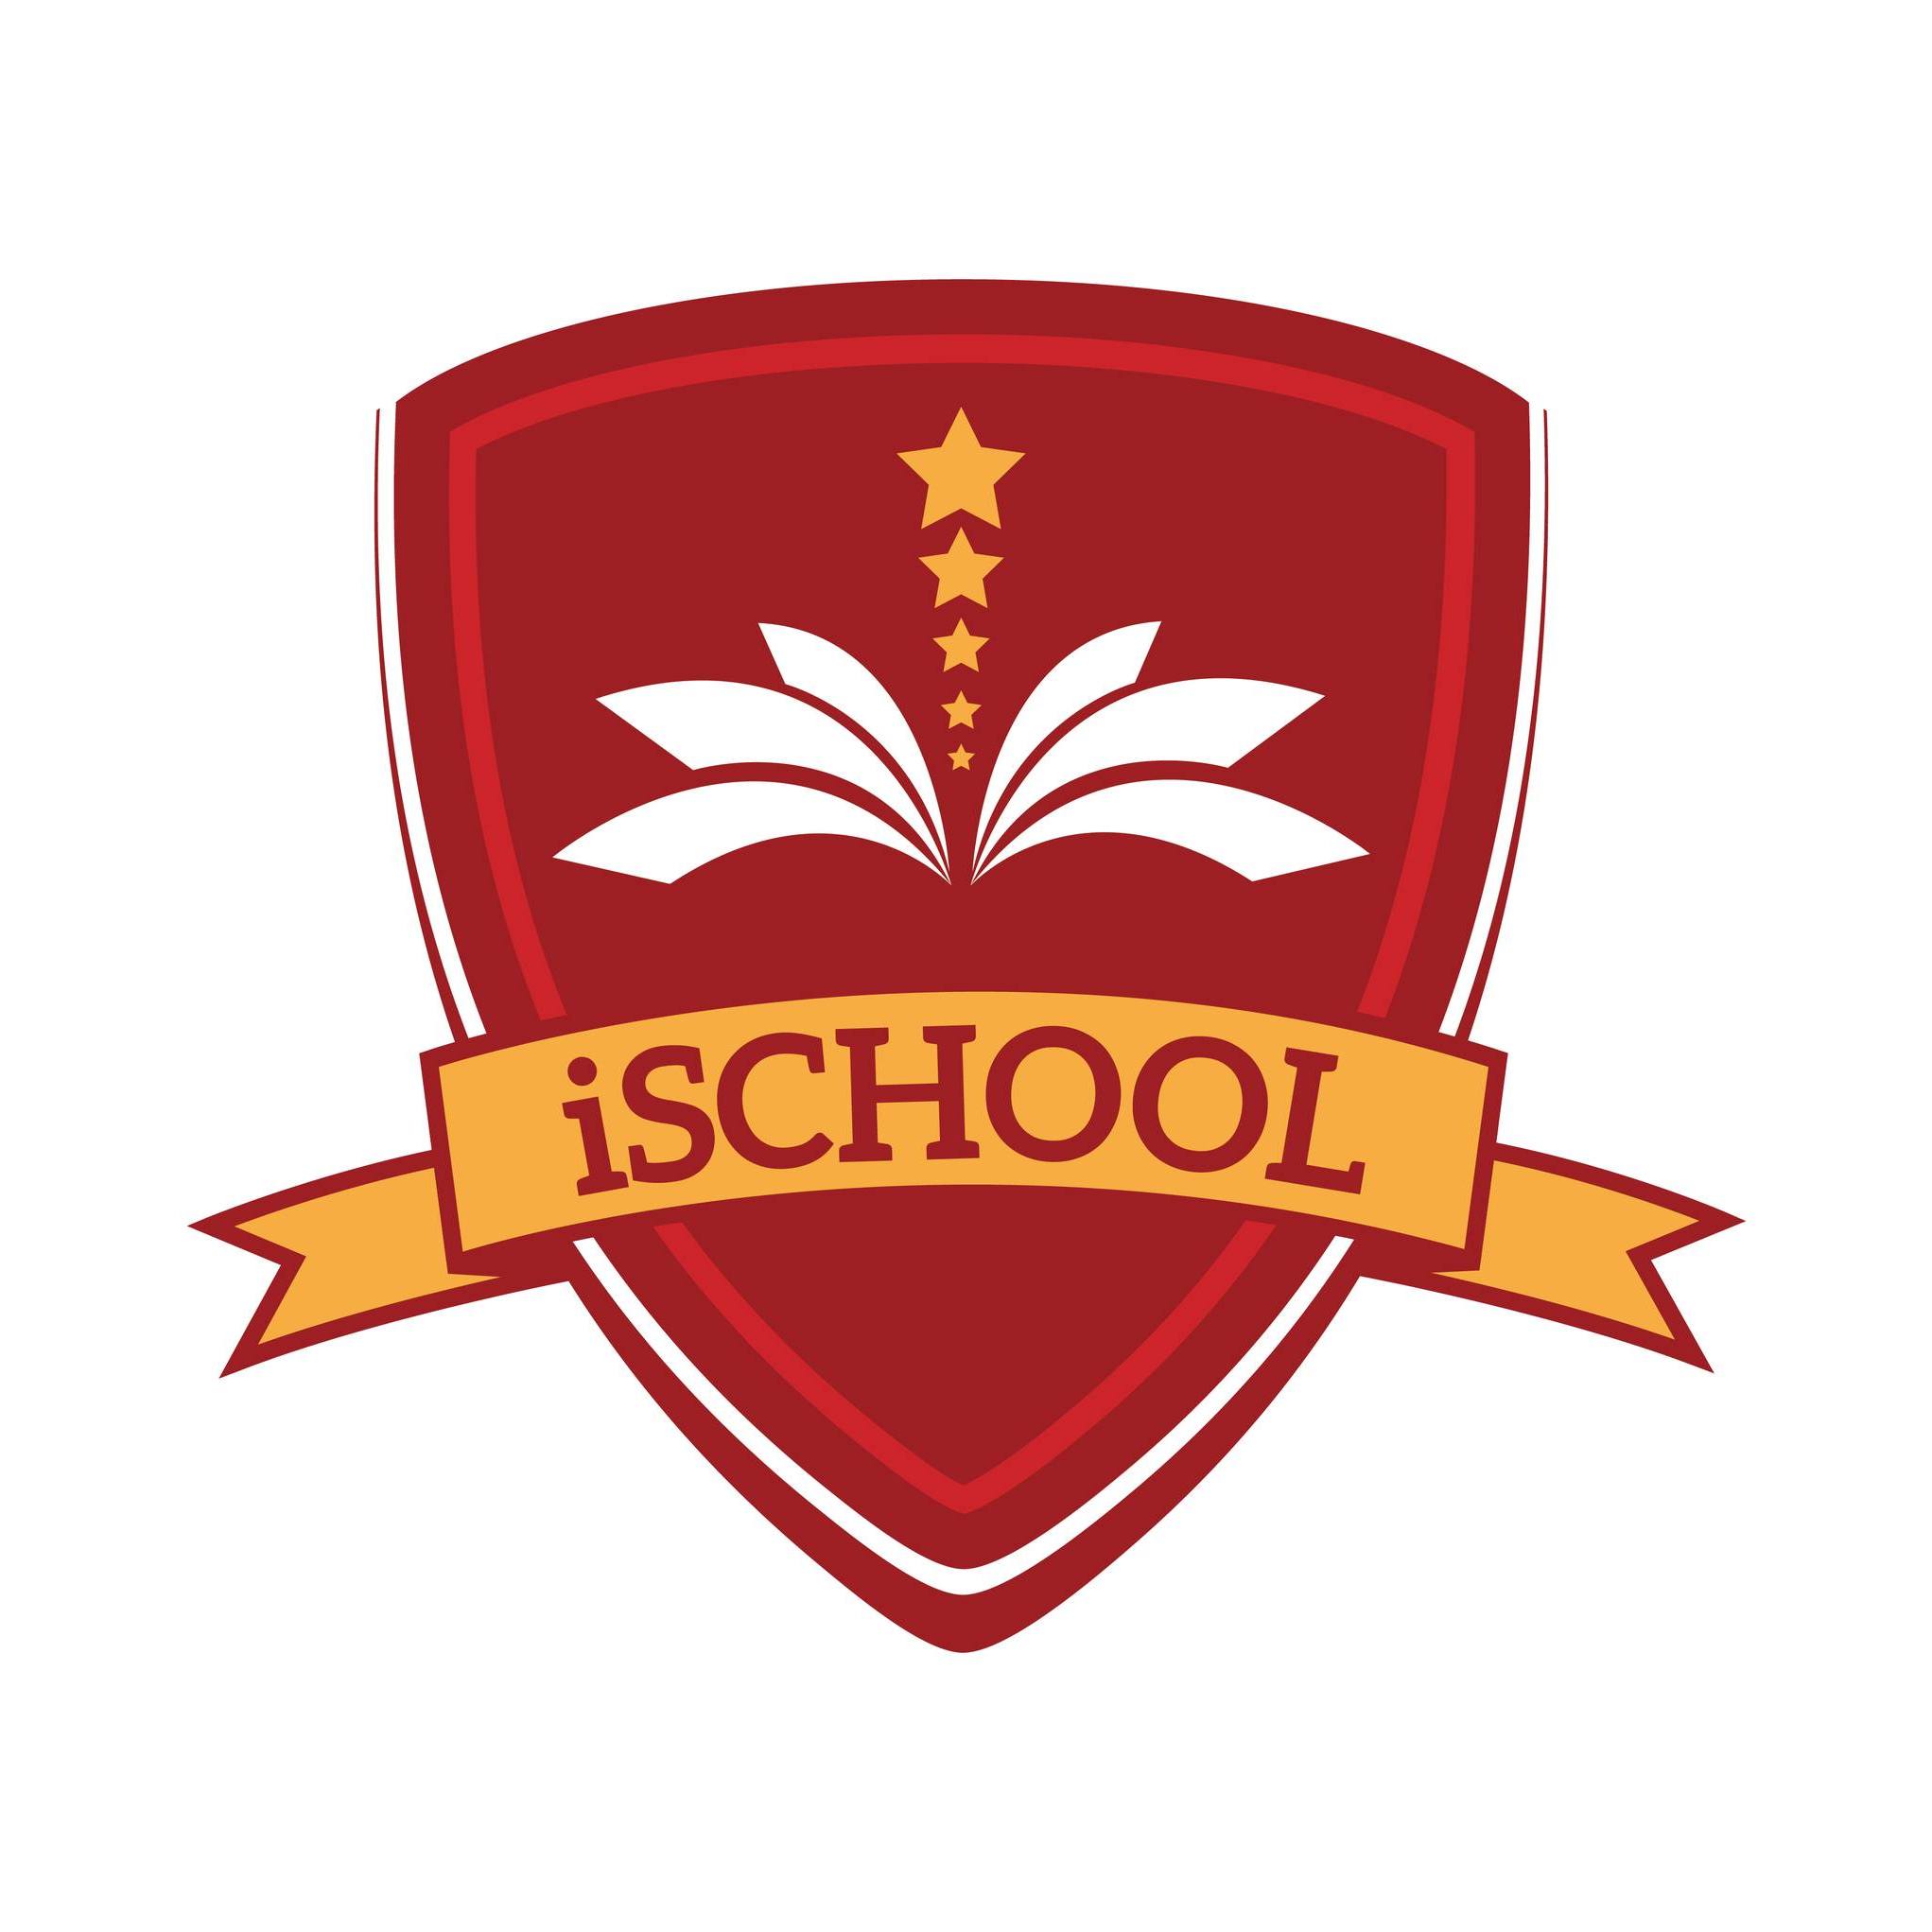 ischool 1 Hệ thống Trường Hội nhập Quốc tế iSchool